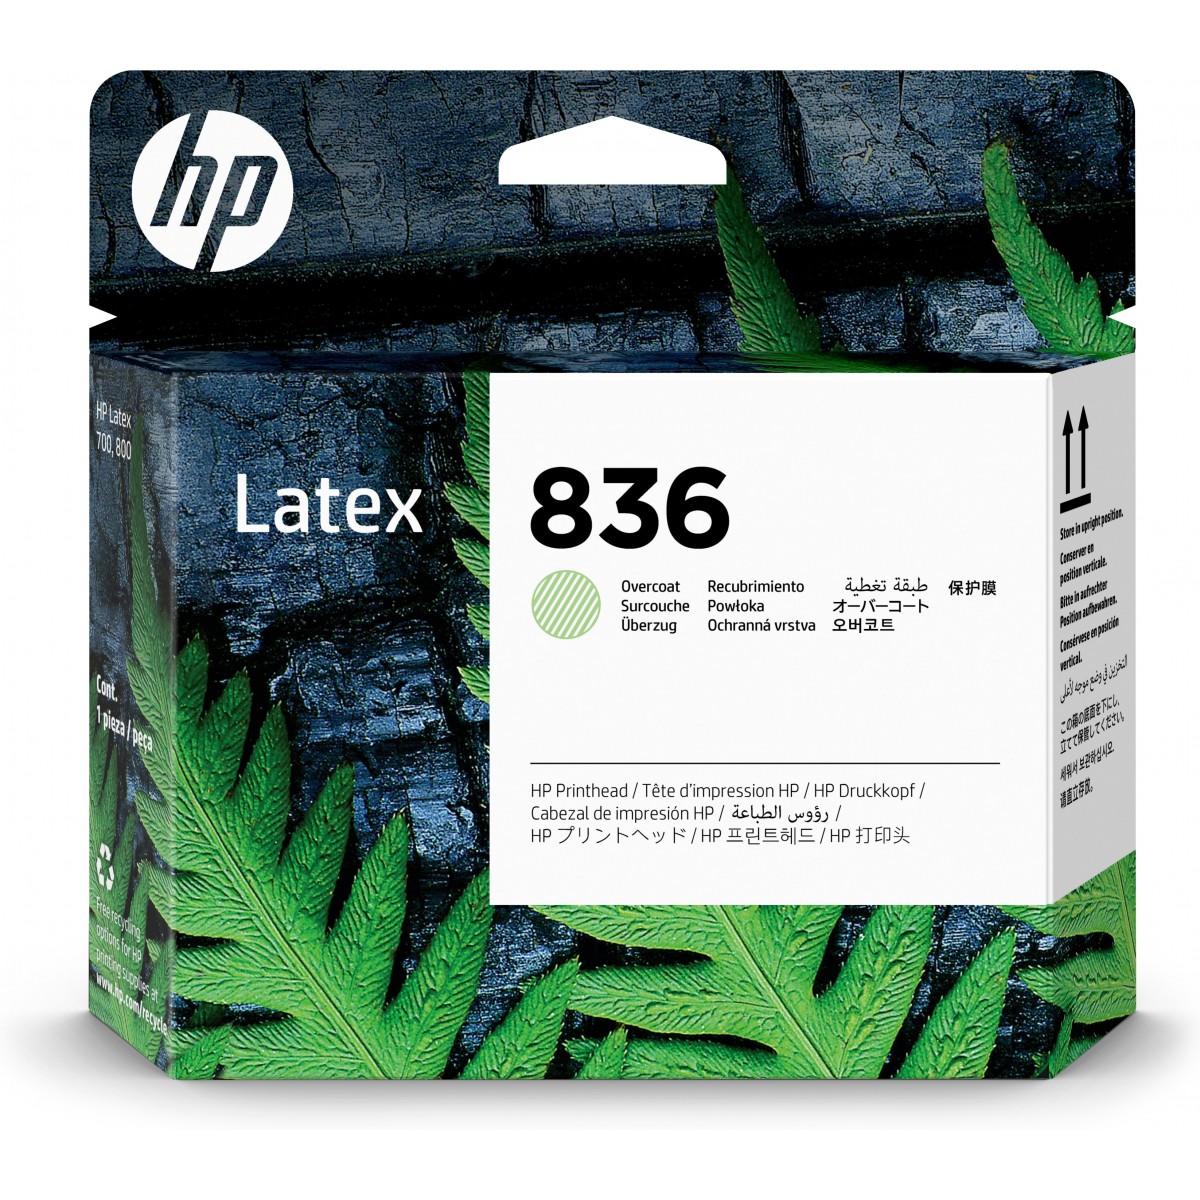 HP 836 - HP Latex 700 - 700 W - 800 - 800 W Printers - Thermal inkjet - 4UV98A - 146.8 mm - 131.4 mm - 27.7 mm